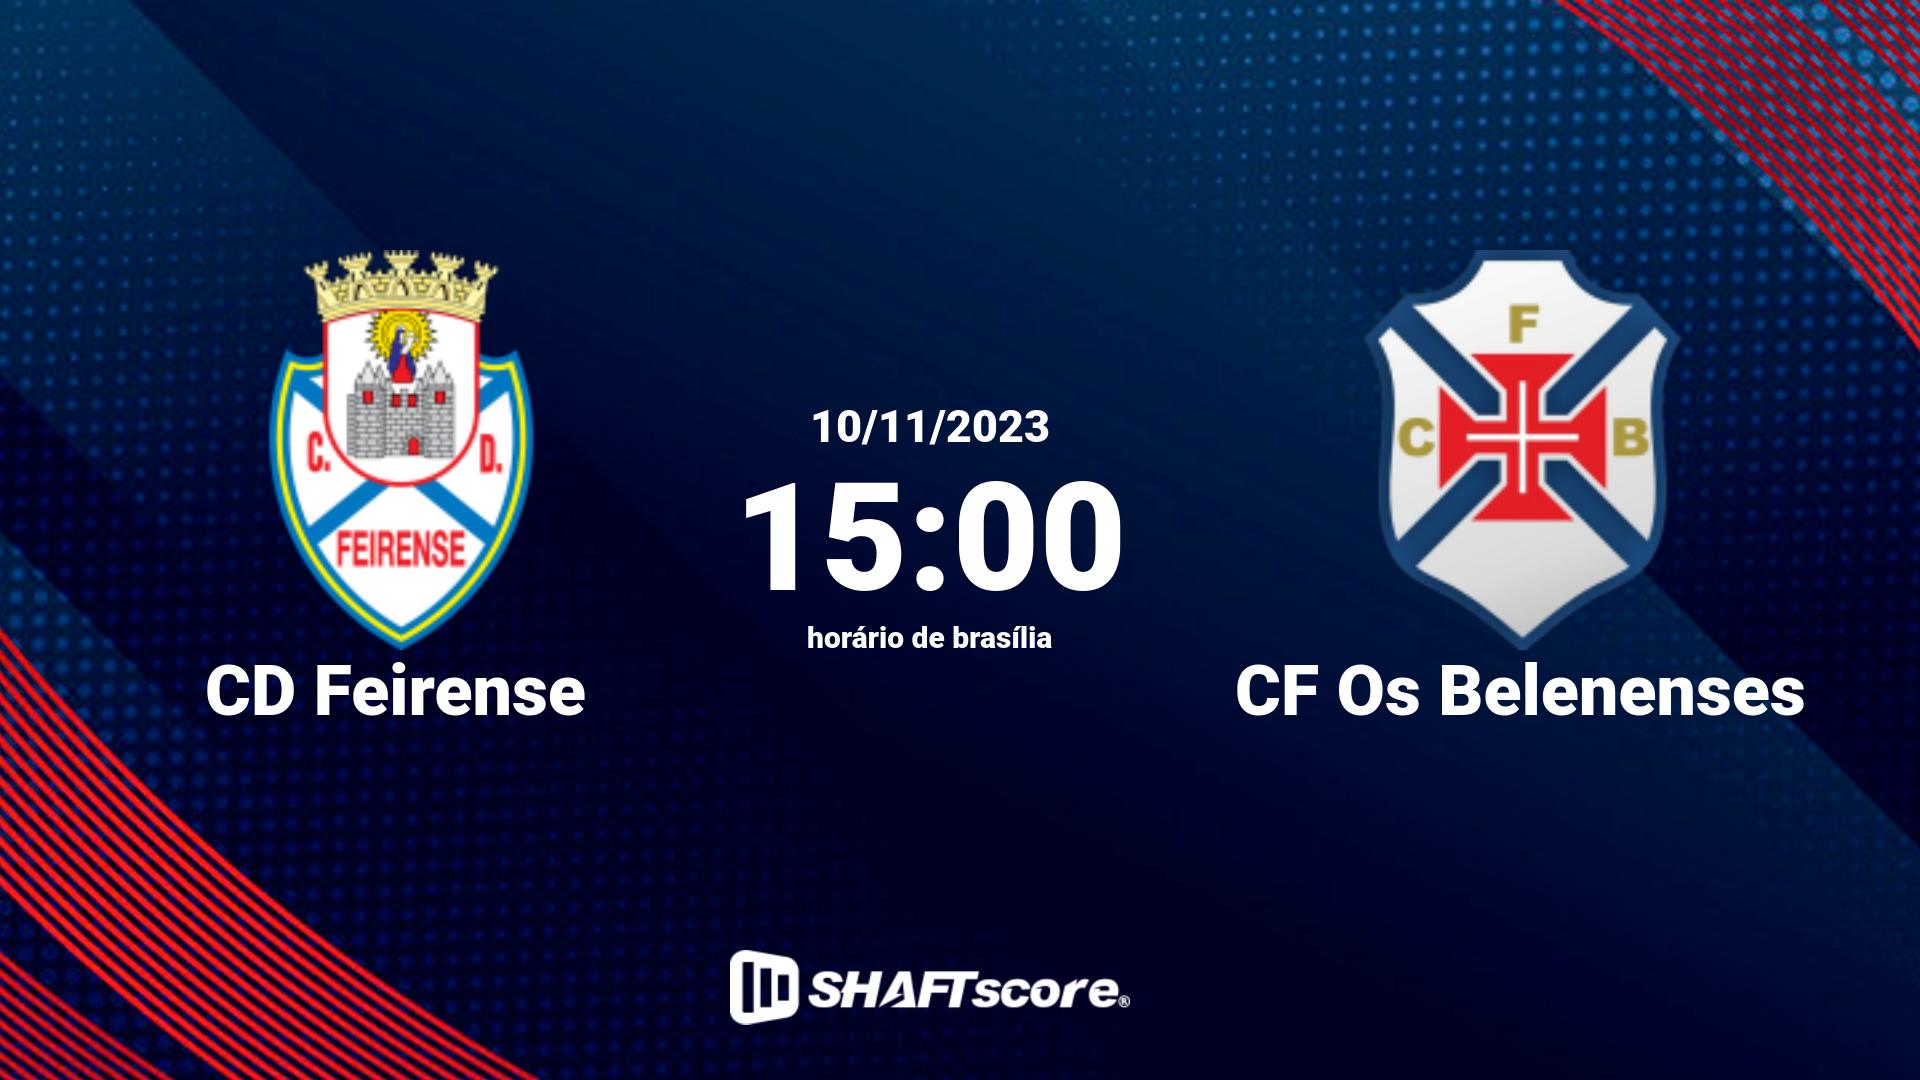 Estatísticas do jogo CD Feirense vs CF Os Belenenses 10.11 15:00